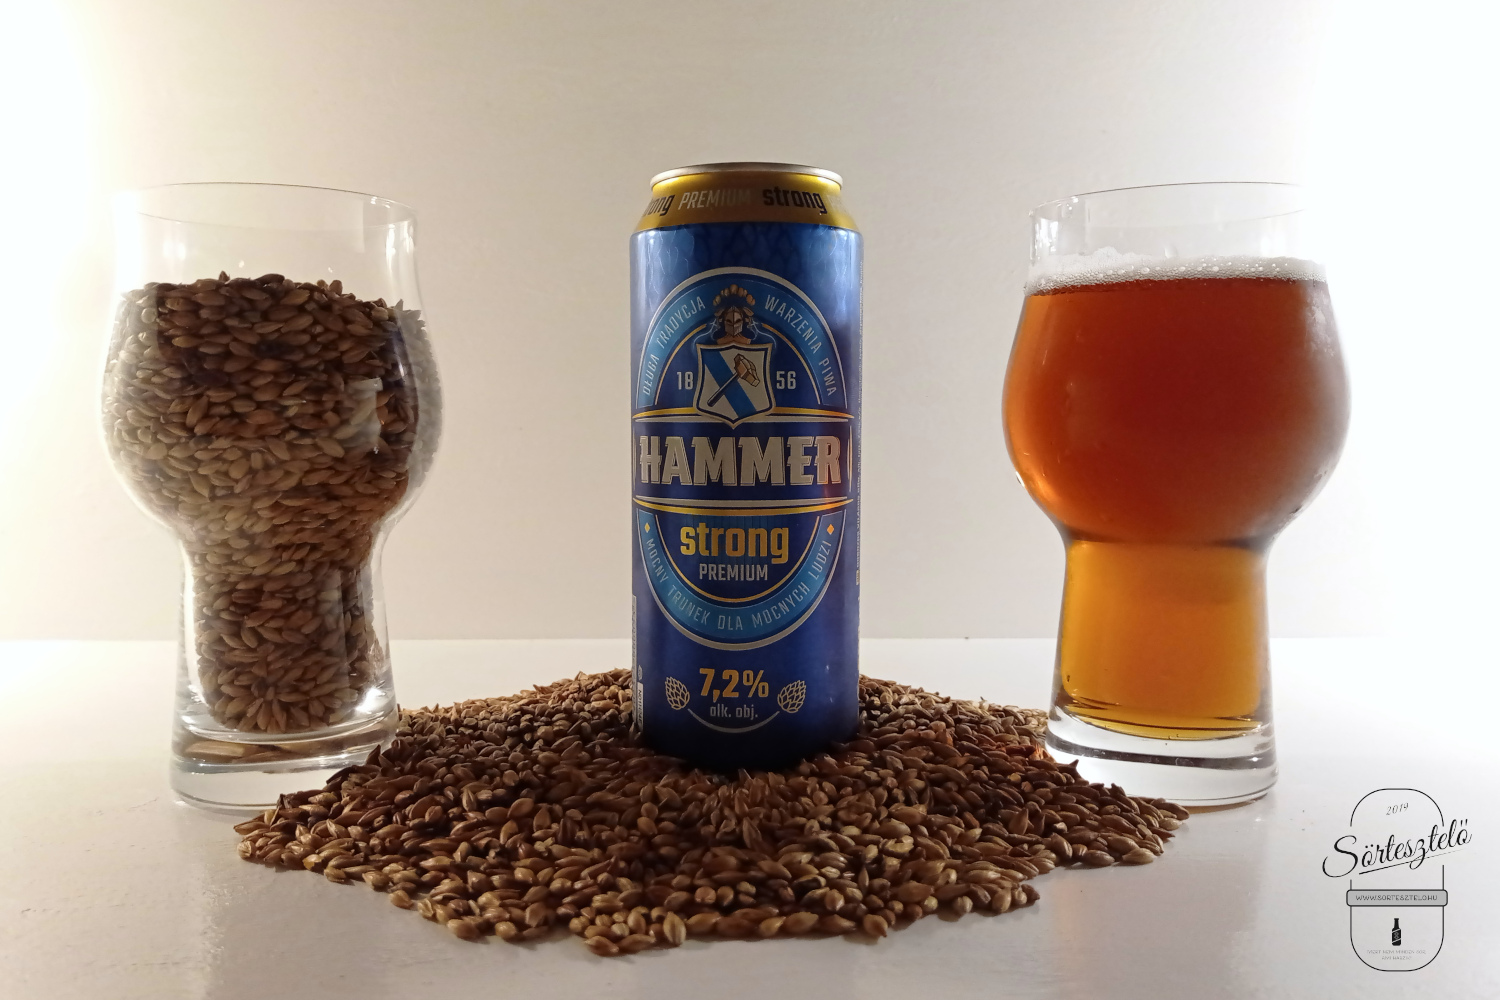 Hammer Strong Premium - a lengyel magyar barátság jegyében